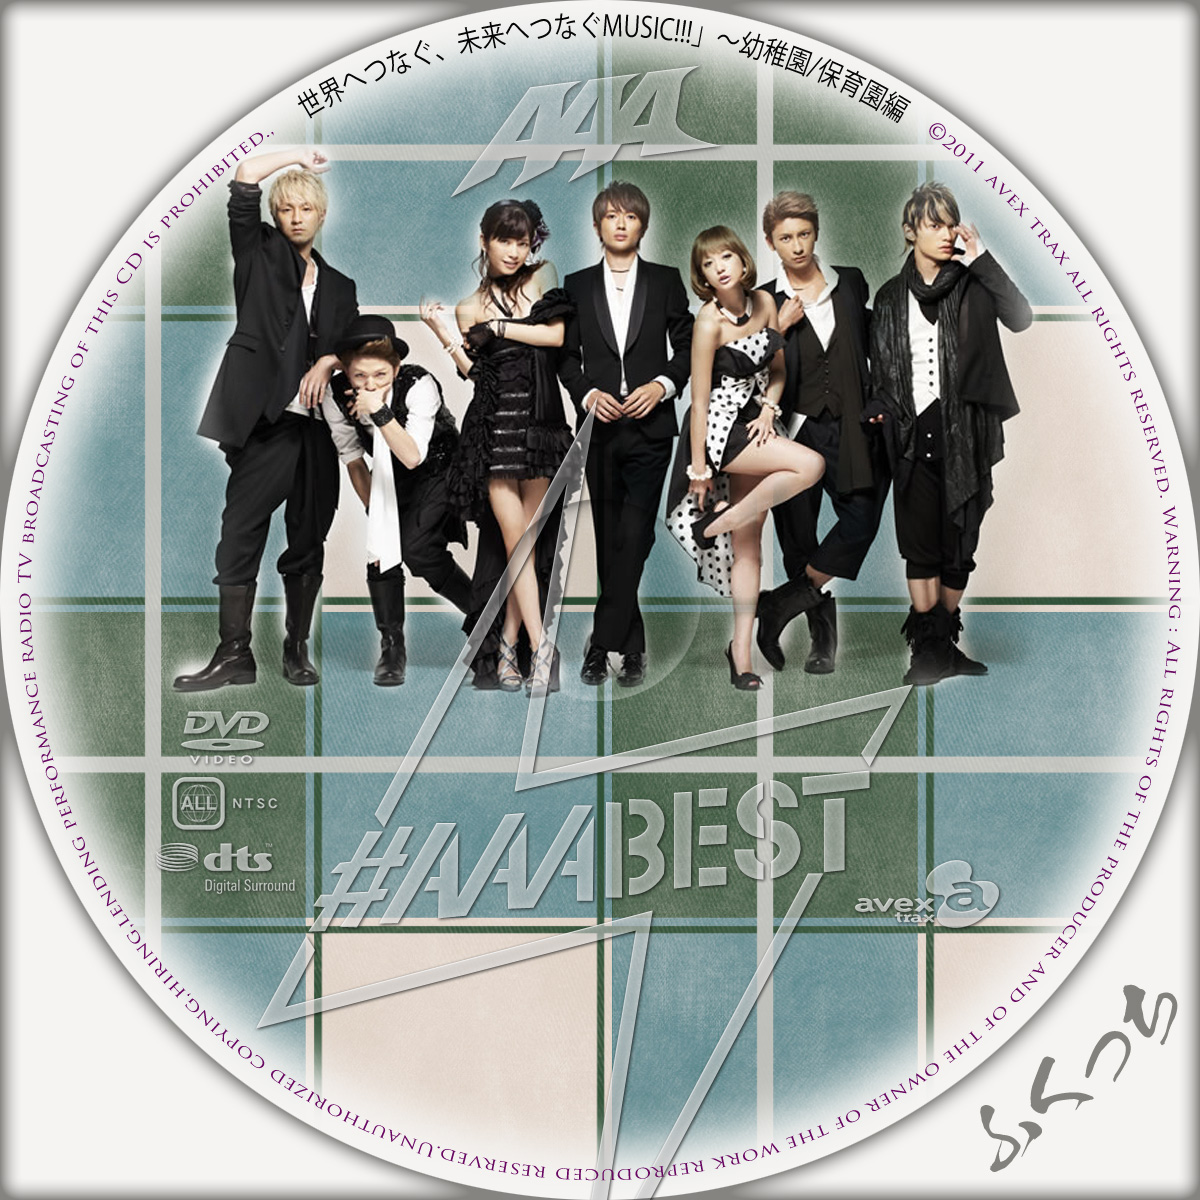 ふくっちの音楽CD/DVDカスタムレーベル AAA - #AAABEST